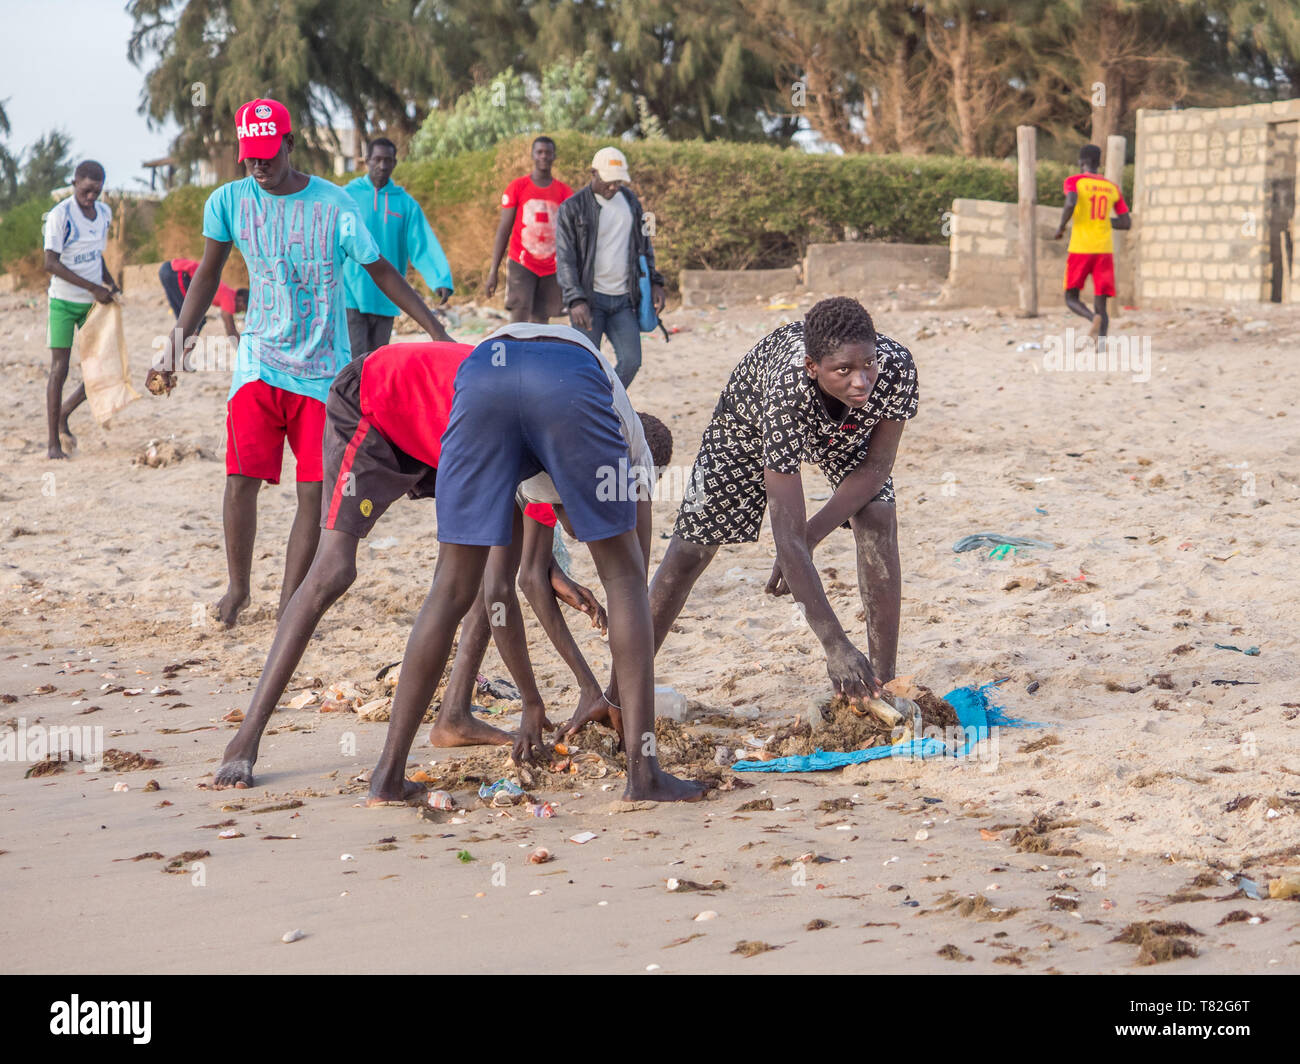 Le Sénégal, l'Afrique - le 26 janvier 2019 : les jeunes garçons africains sont le nettoyage de la plage de la pollution afin de jouer au football. Concept de la pollution. Fisher colorés Banque D'Images